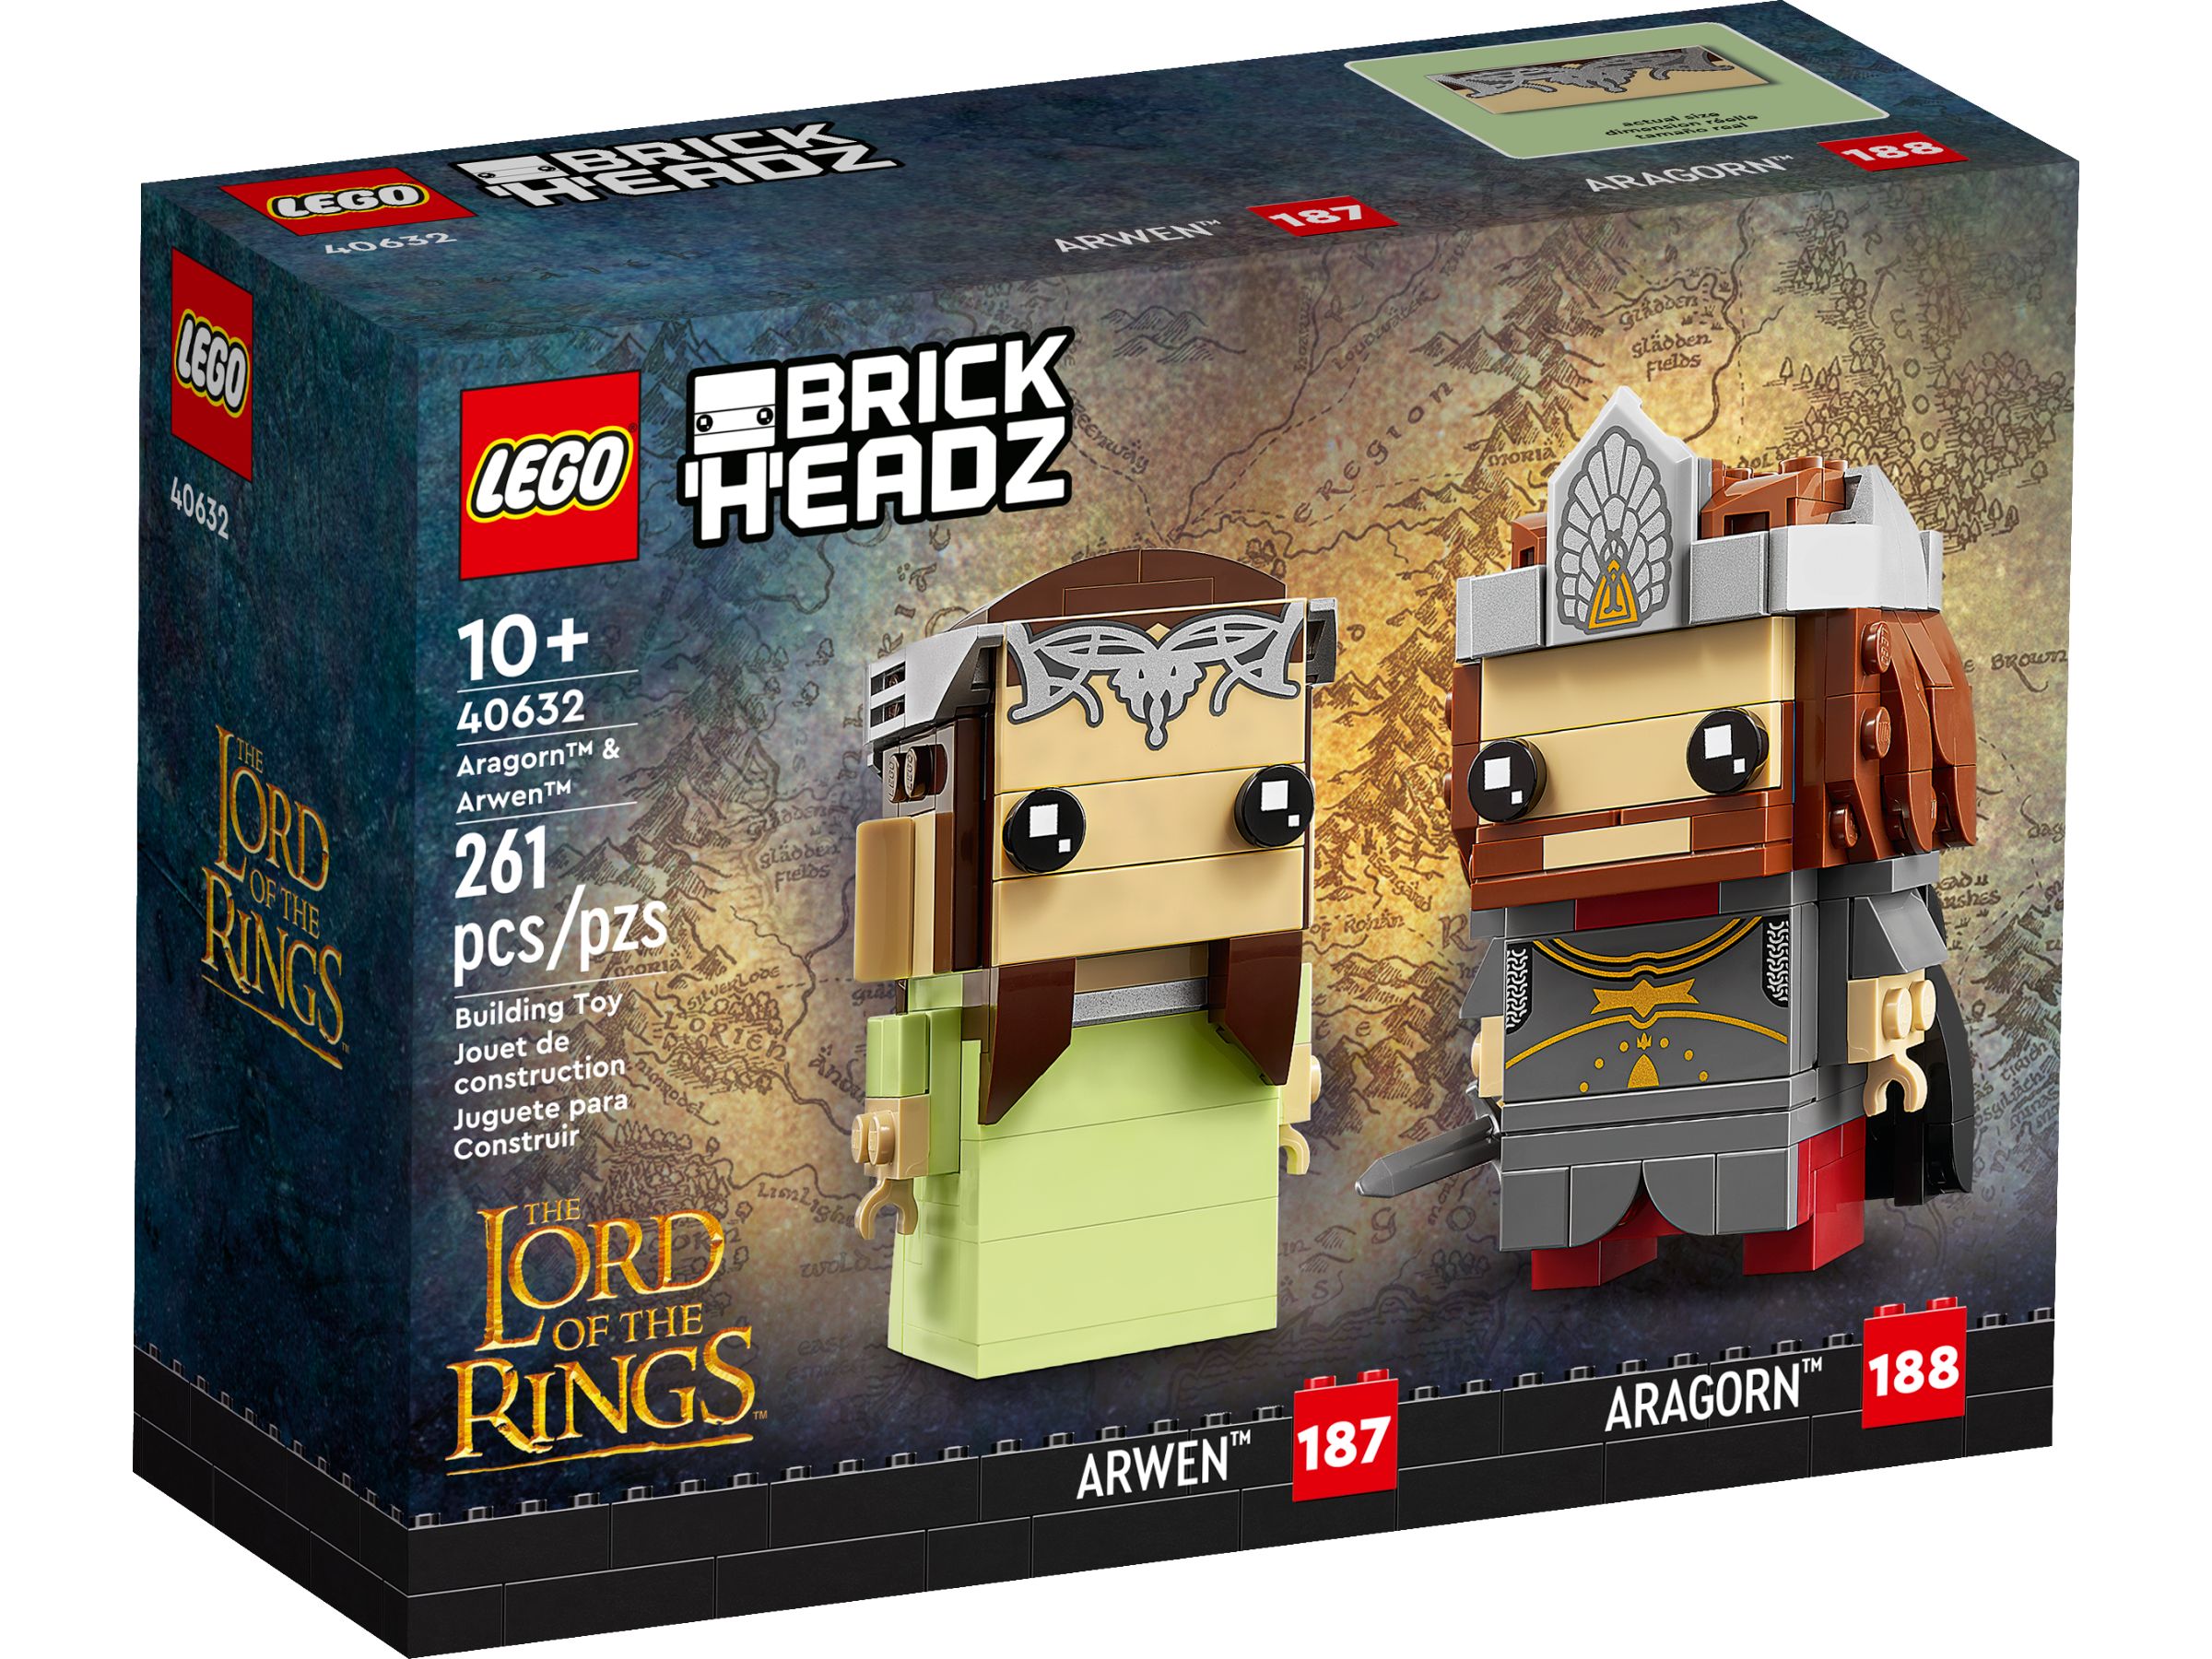 LEGO BrickHeadz 40632 Aragorn™ und Arwen™ LEGO_40632_alt1.jpg